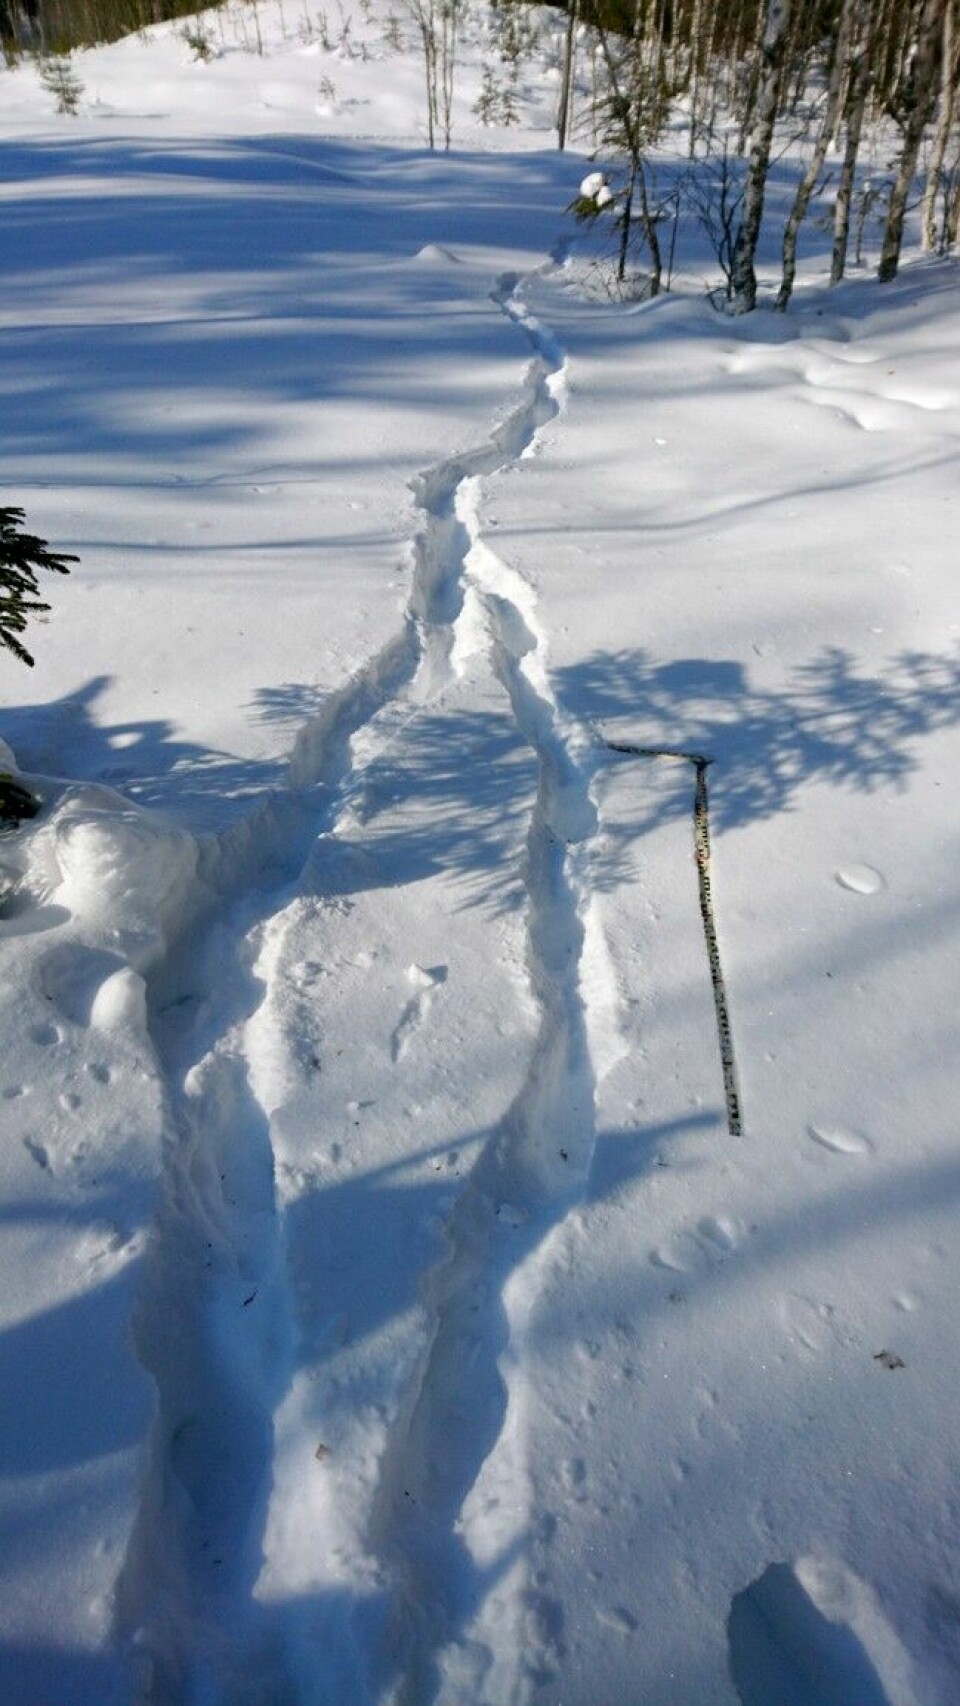 Hvilket eller hvilke dyr har gått her? Snøen er løs, sporstempler og skrittavstand er utydelig. Svaret er to ulver.